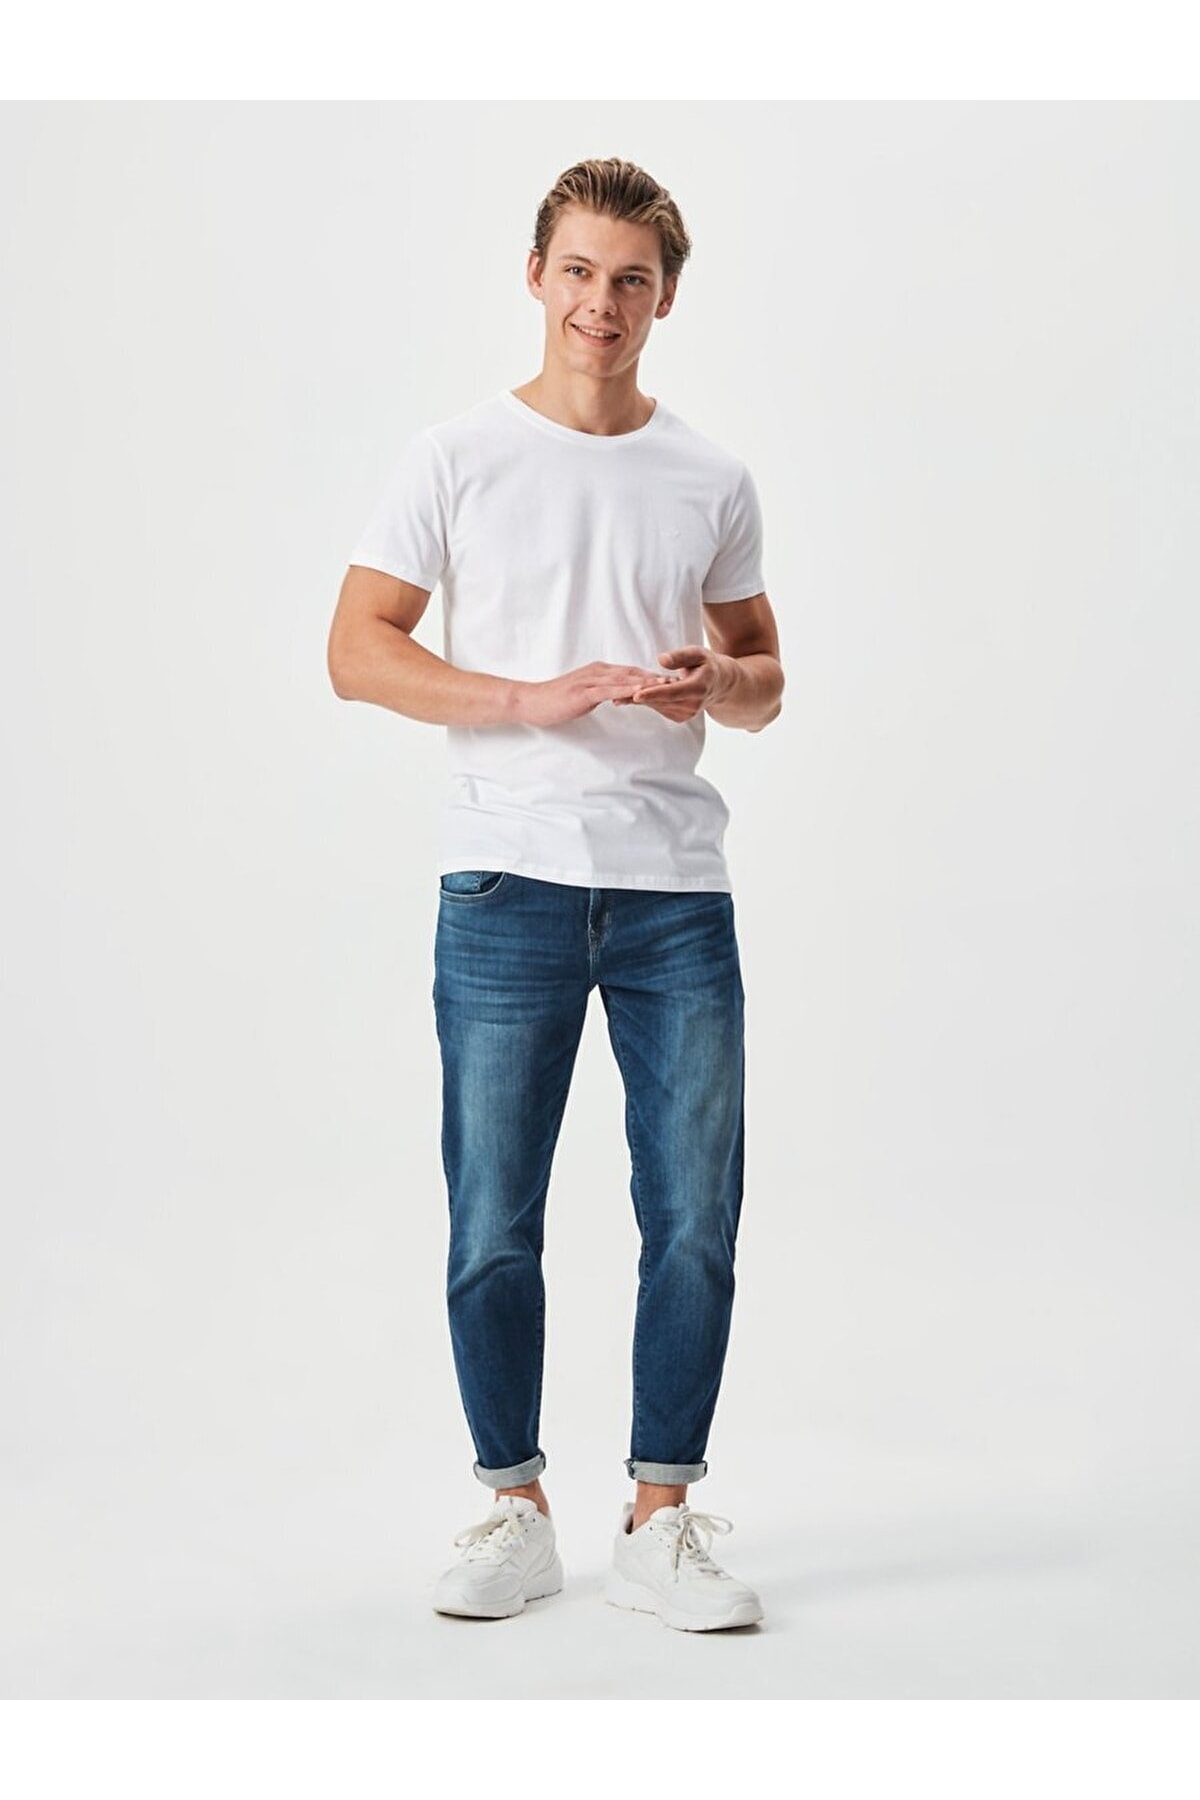 Ltb T-Shirt Weiß Regular Fit Fast ausverkauft